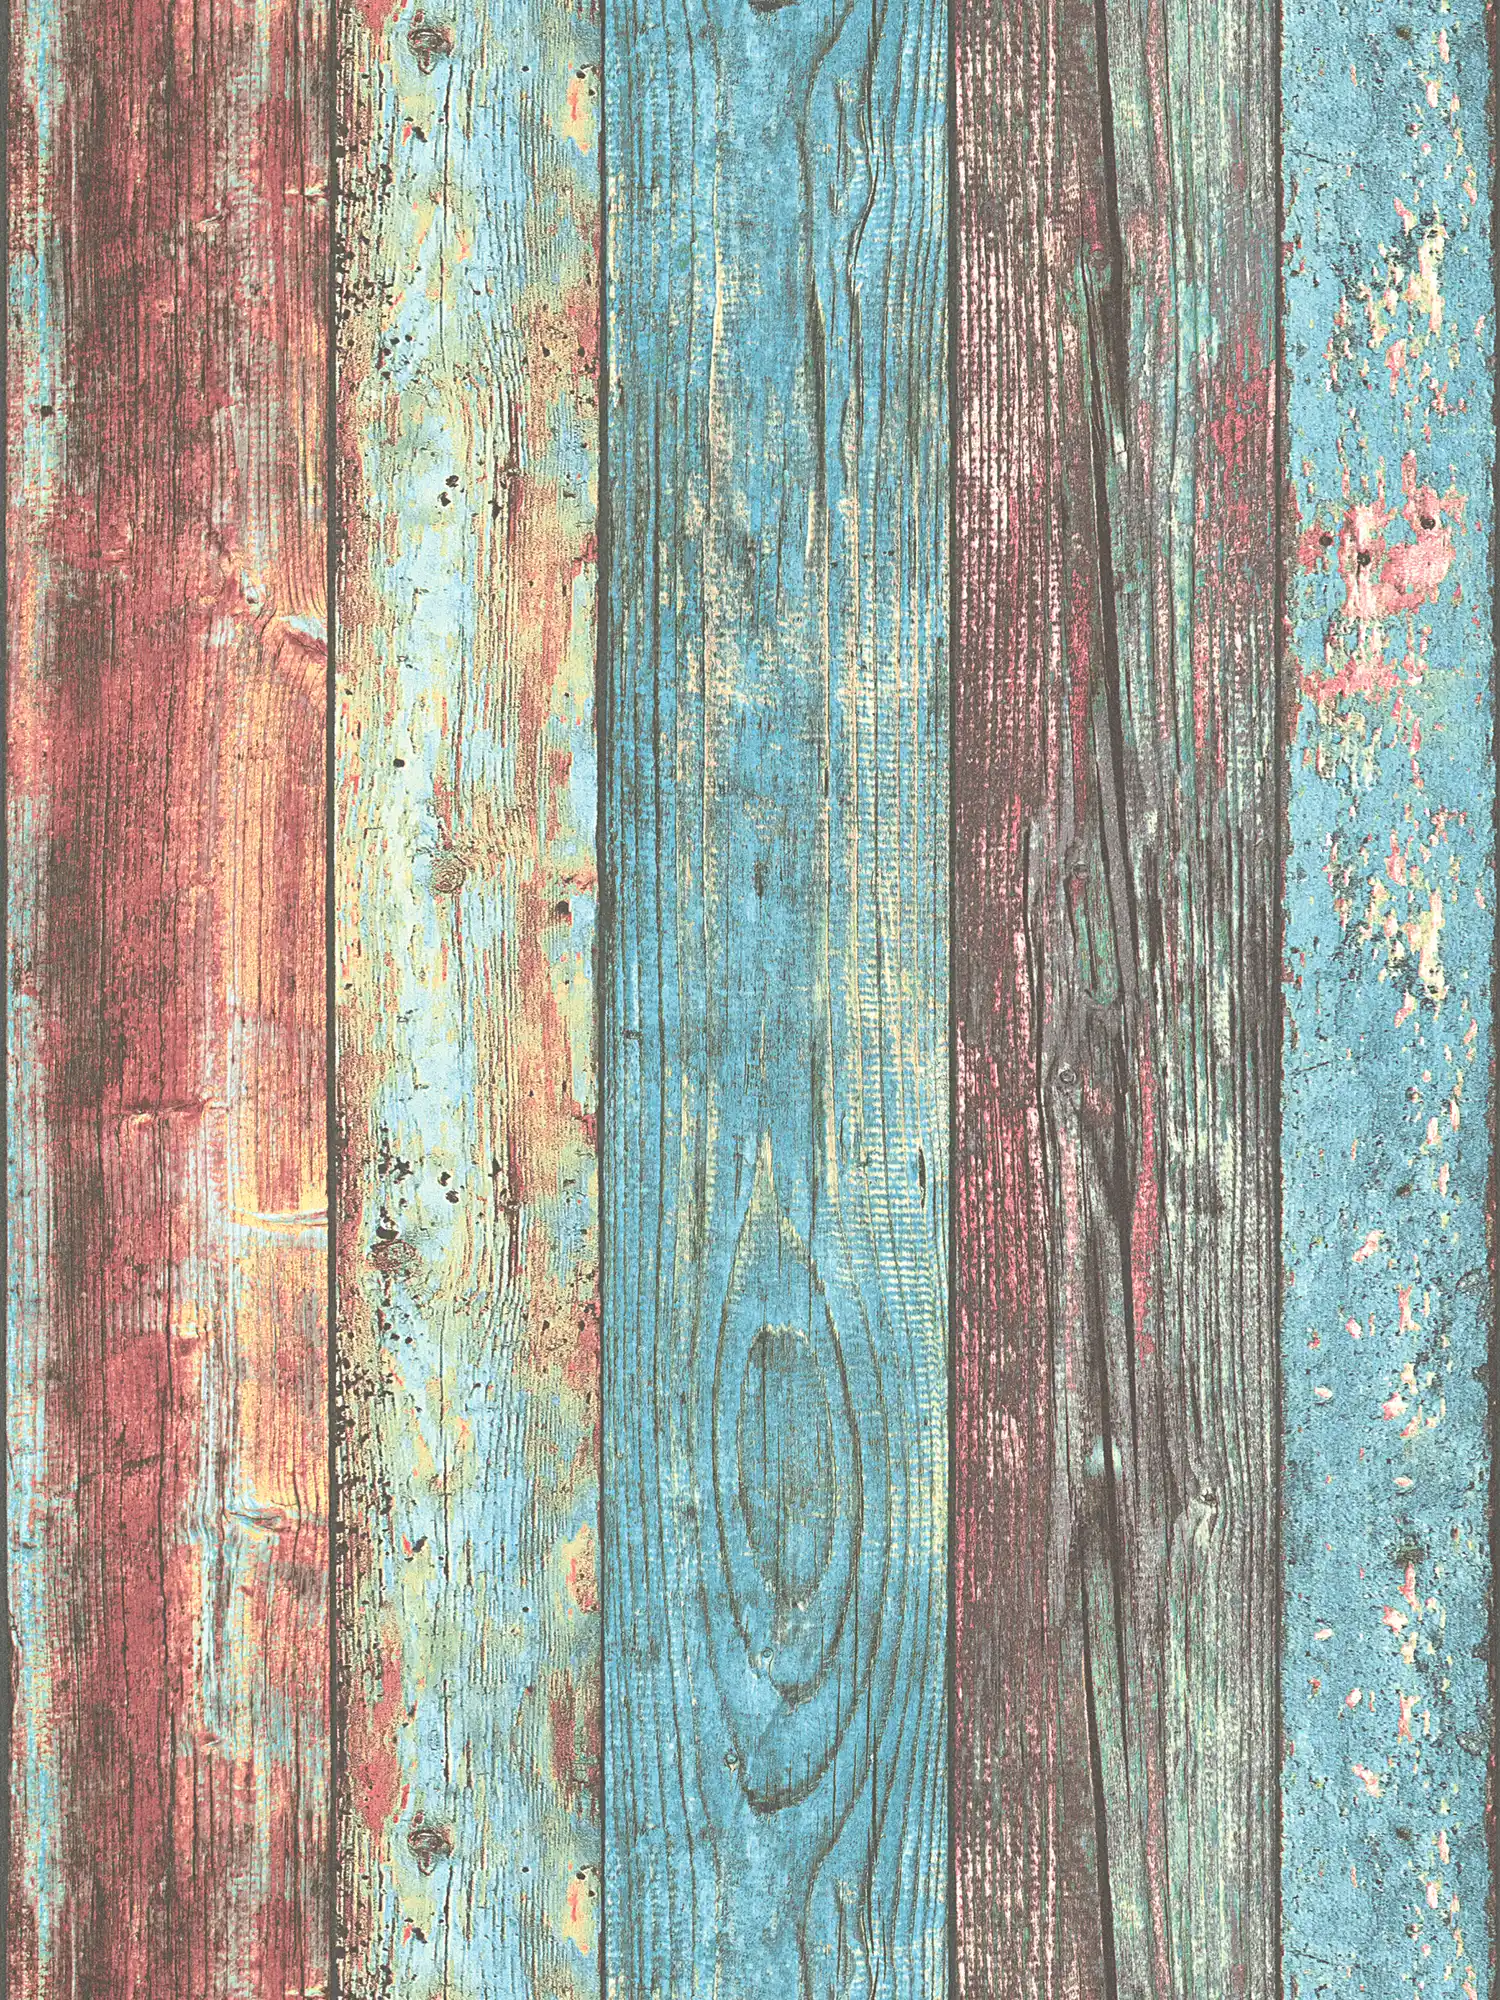 Kleurrijk houtbehang Shabby Chic stijl met bordpatroon - blauw, rood, bruin
